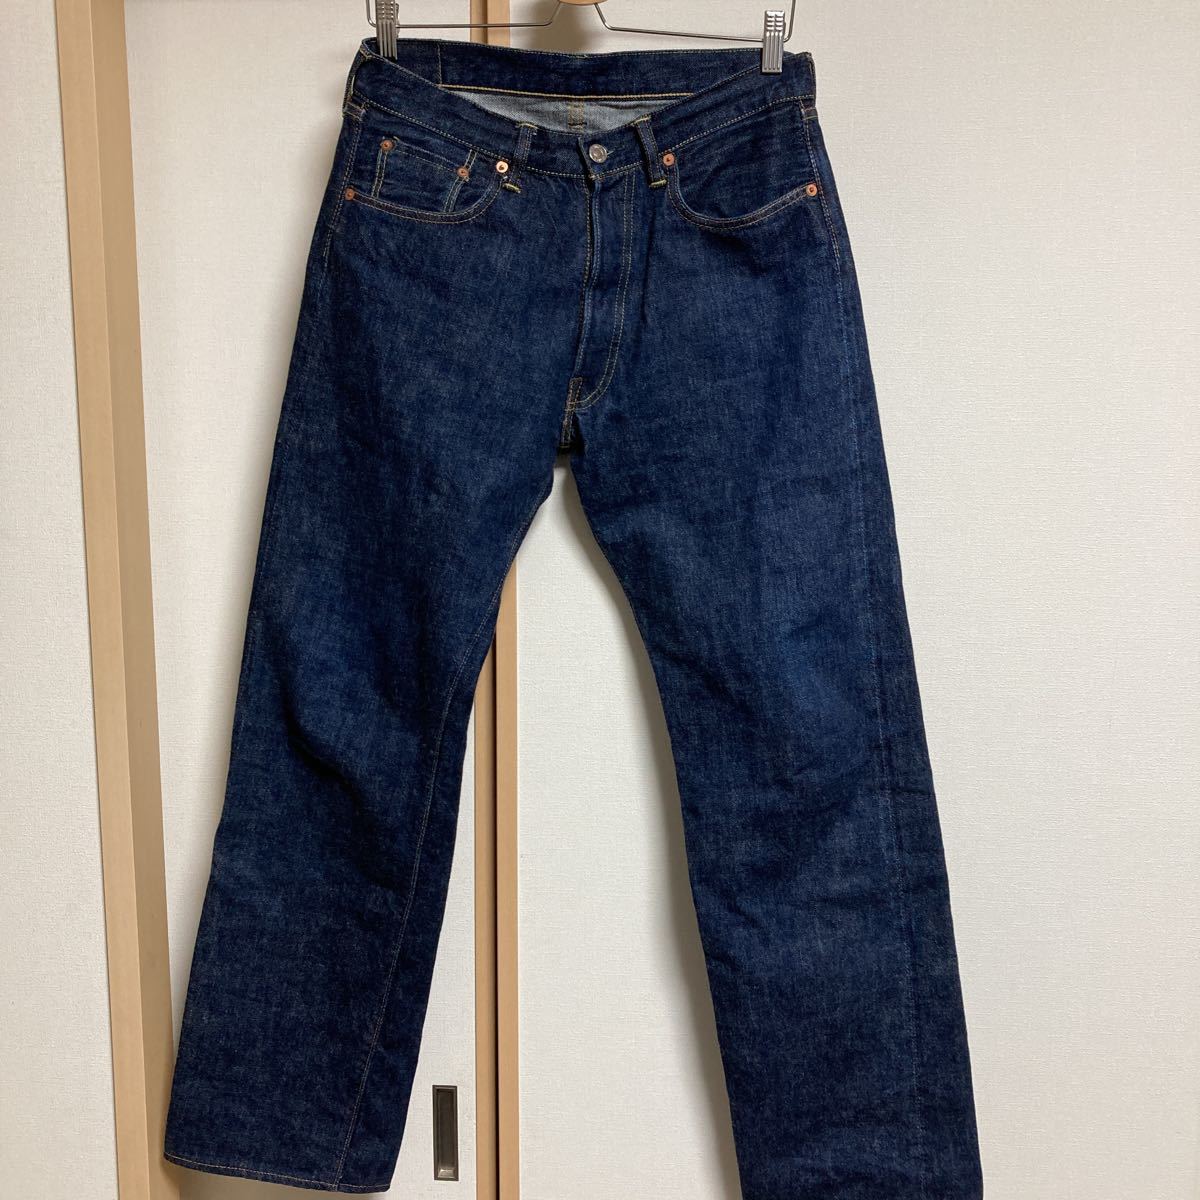 【美品】TCB jeans ティーシービージーンズ 50's XXモデル 13.5ozデニム ストレートジーンズ W32_画像2